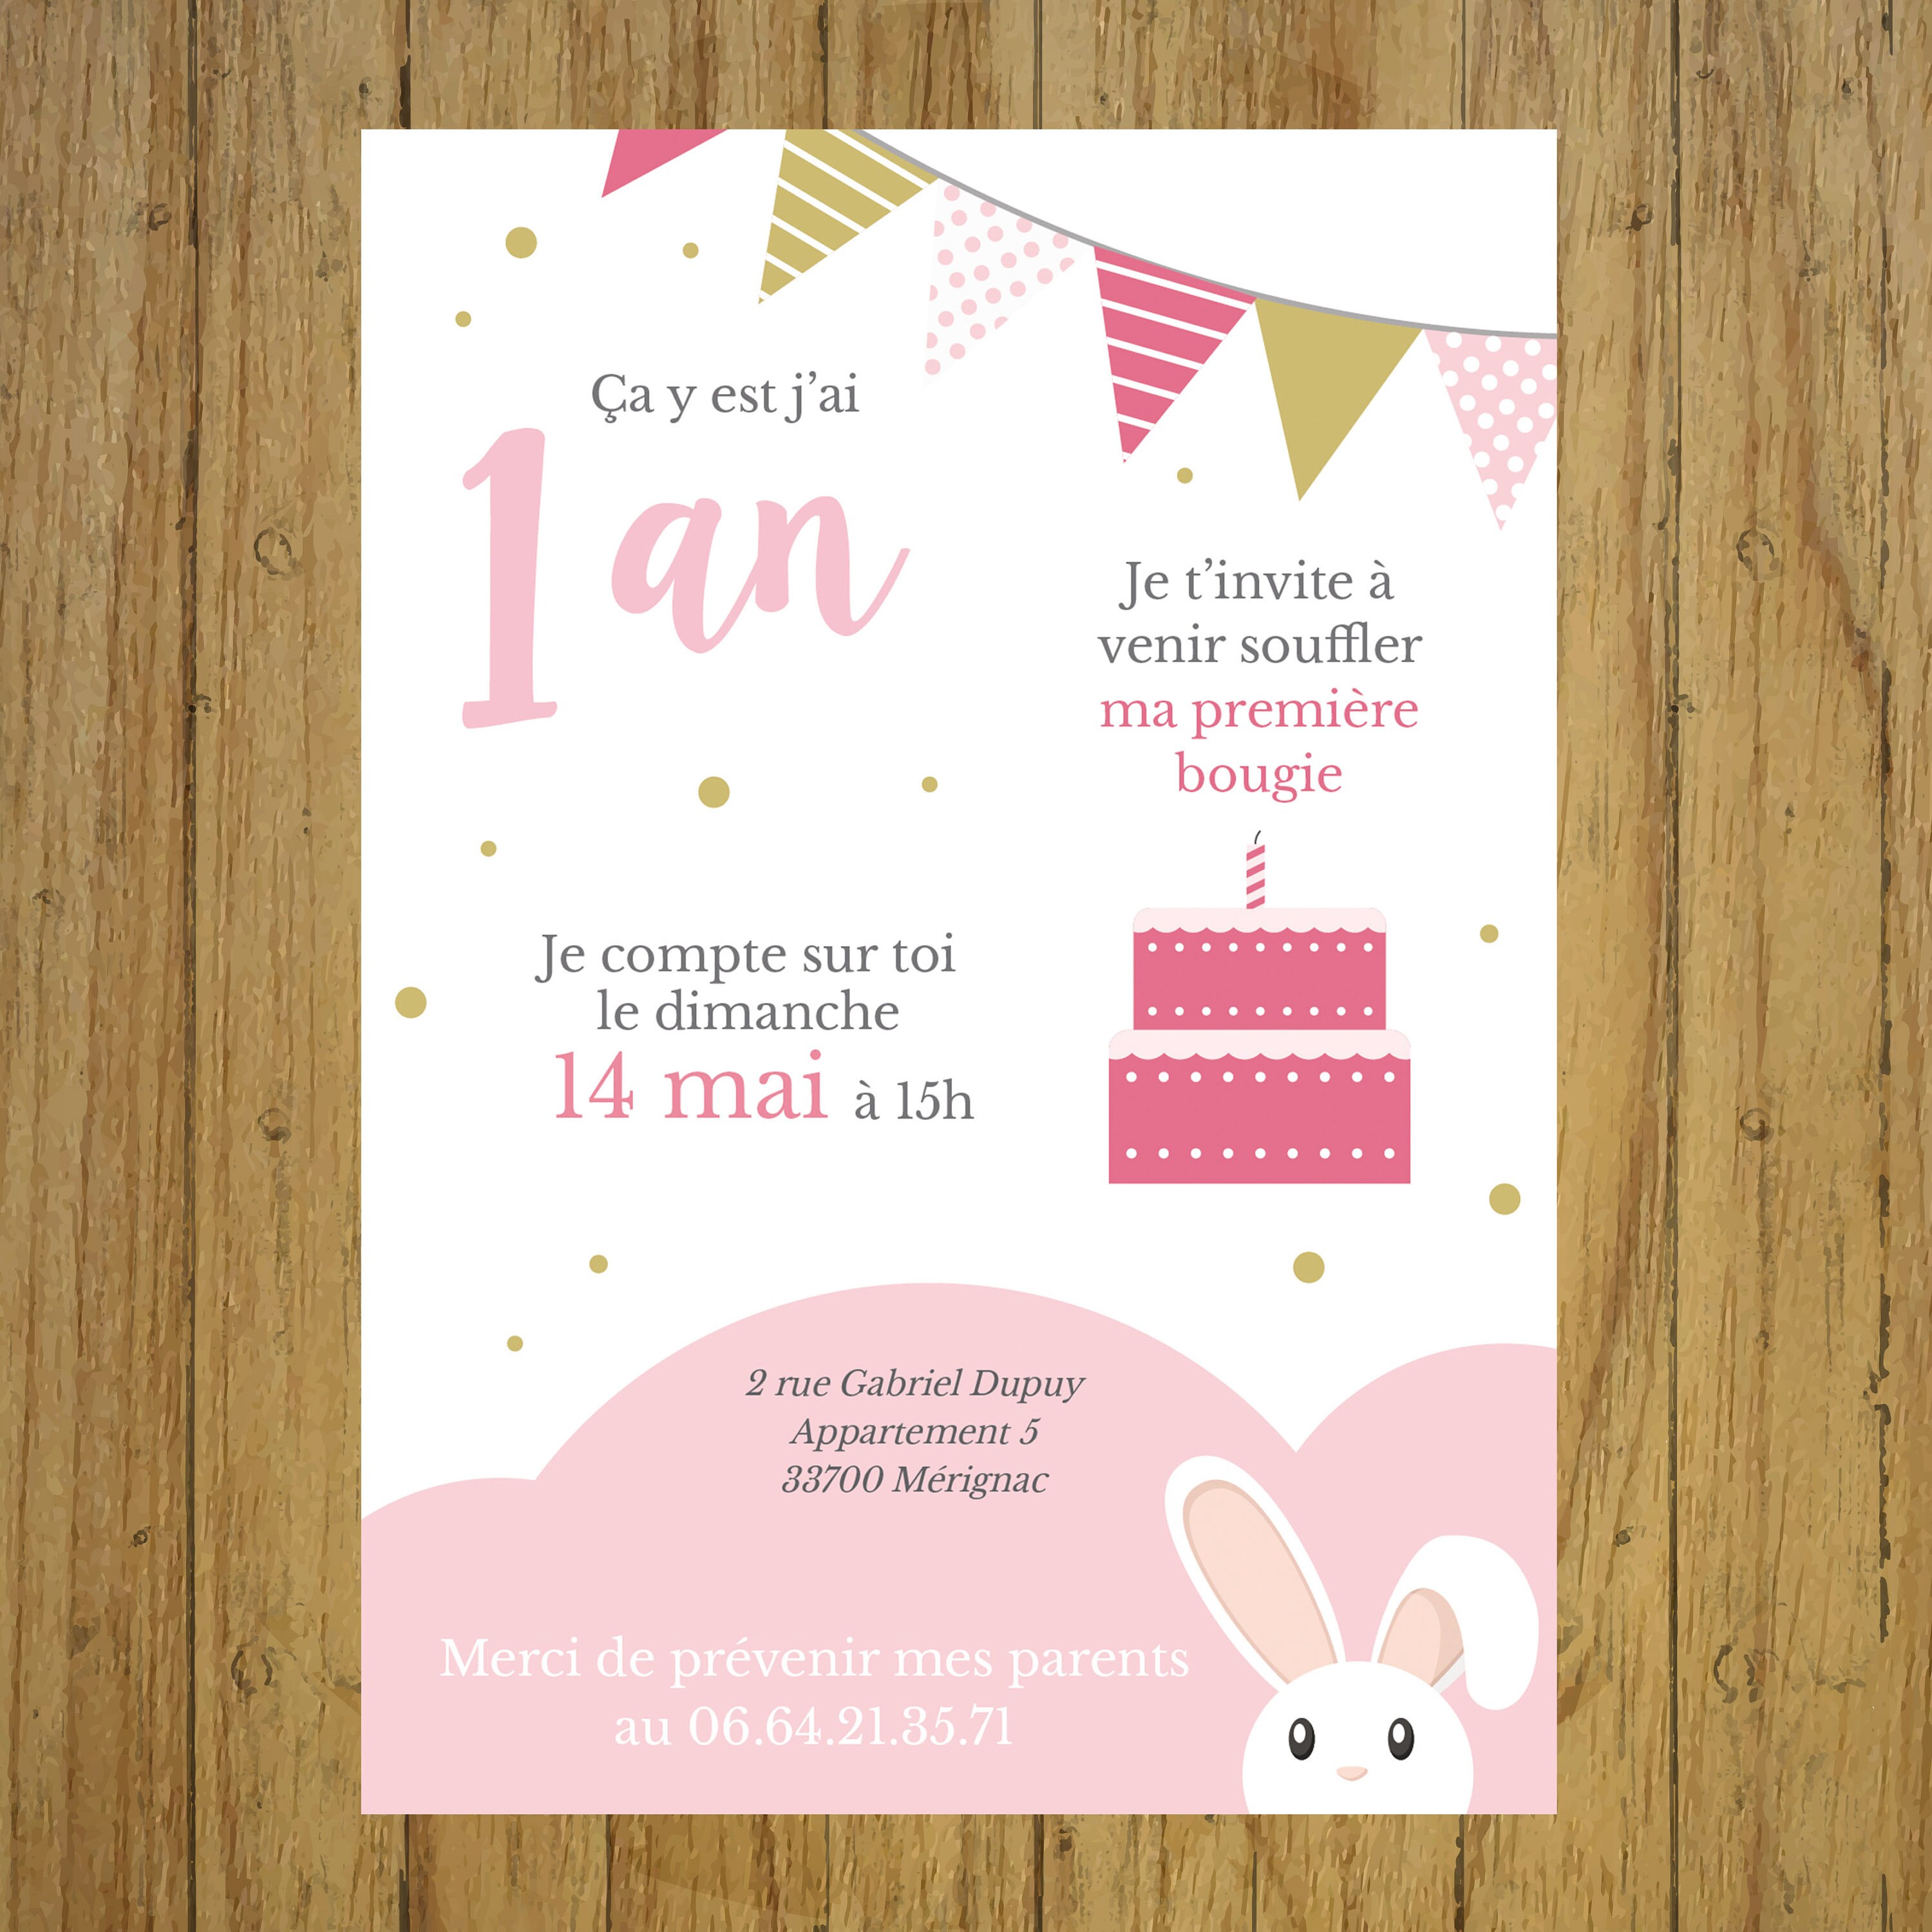 Invitation anniversaire enfant Petit lapin doré │ Planet Cards